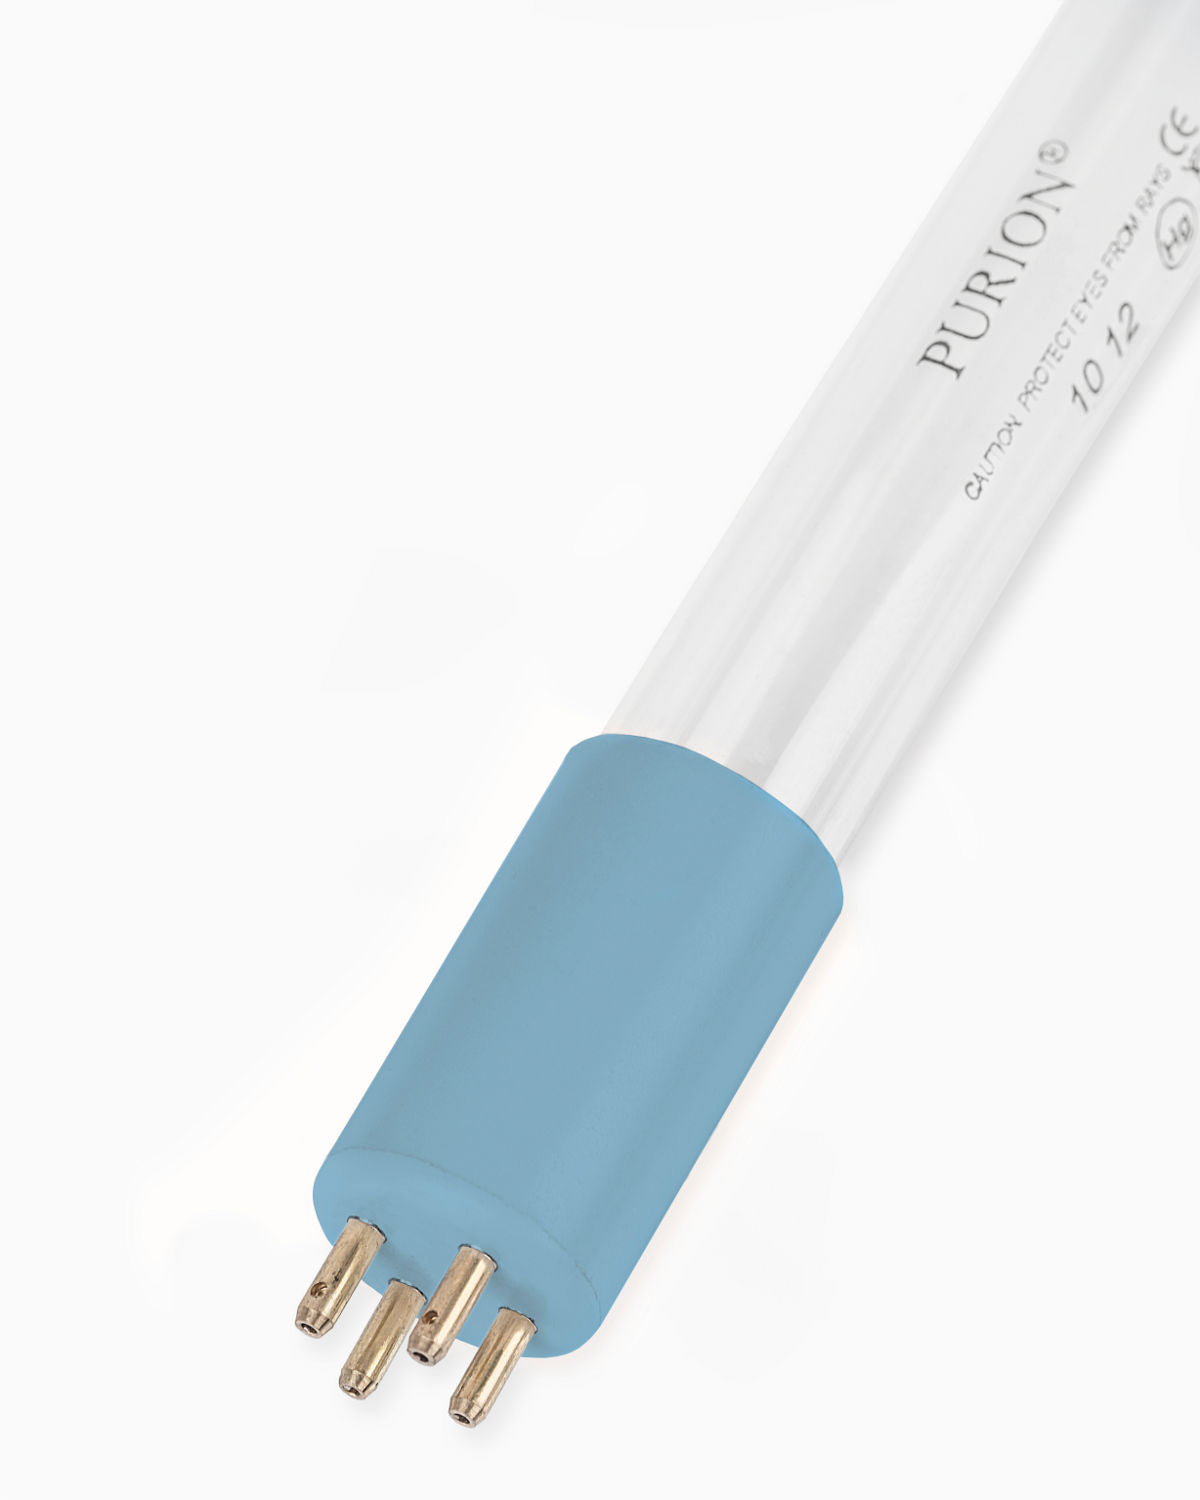 Eine PURION IBC Universal 36W OTC SPL BS Blaulichtröhre auf weißem Hintergrund, die Wasser reinigt. (Markenname: UV Concept GmbH)